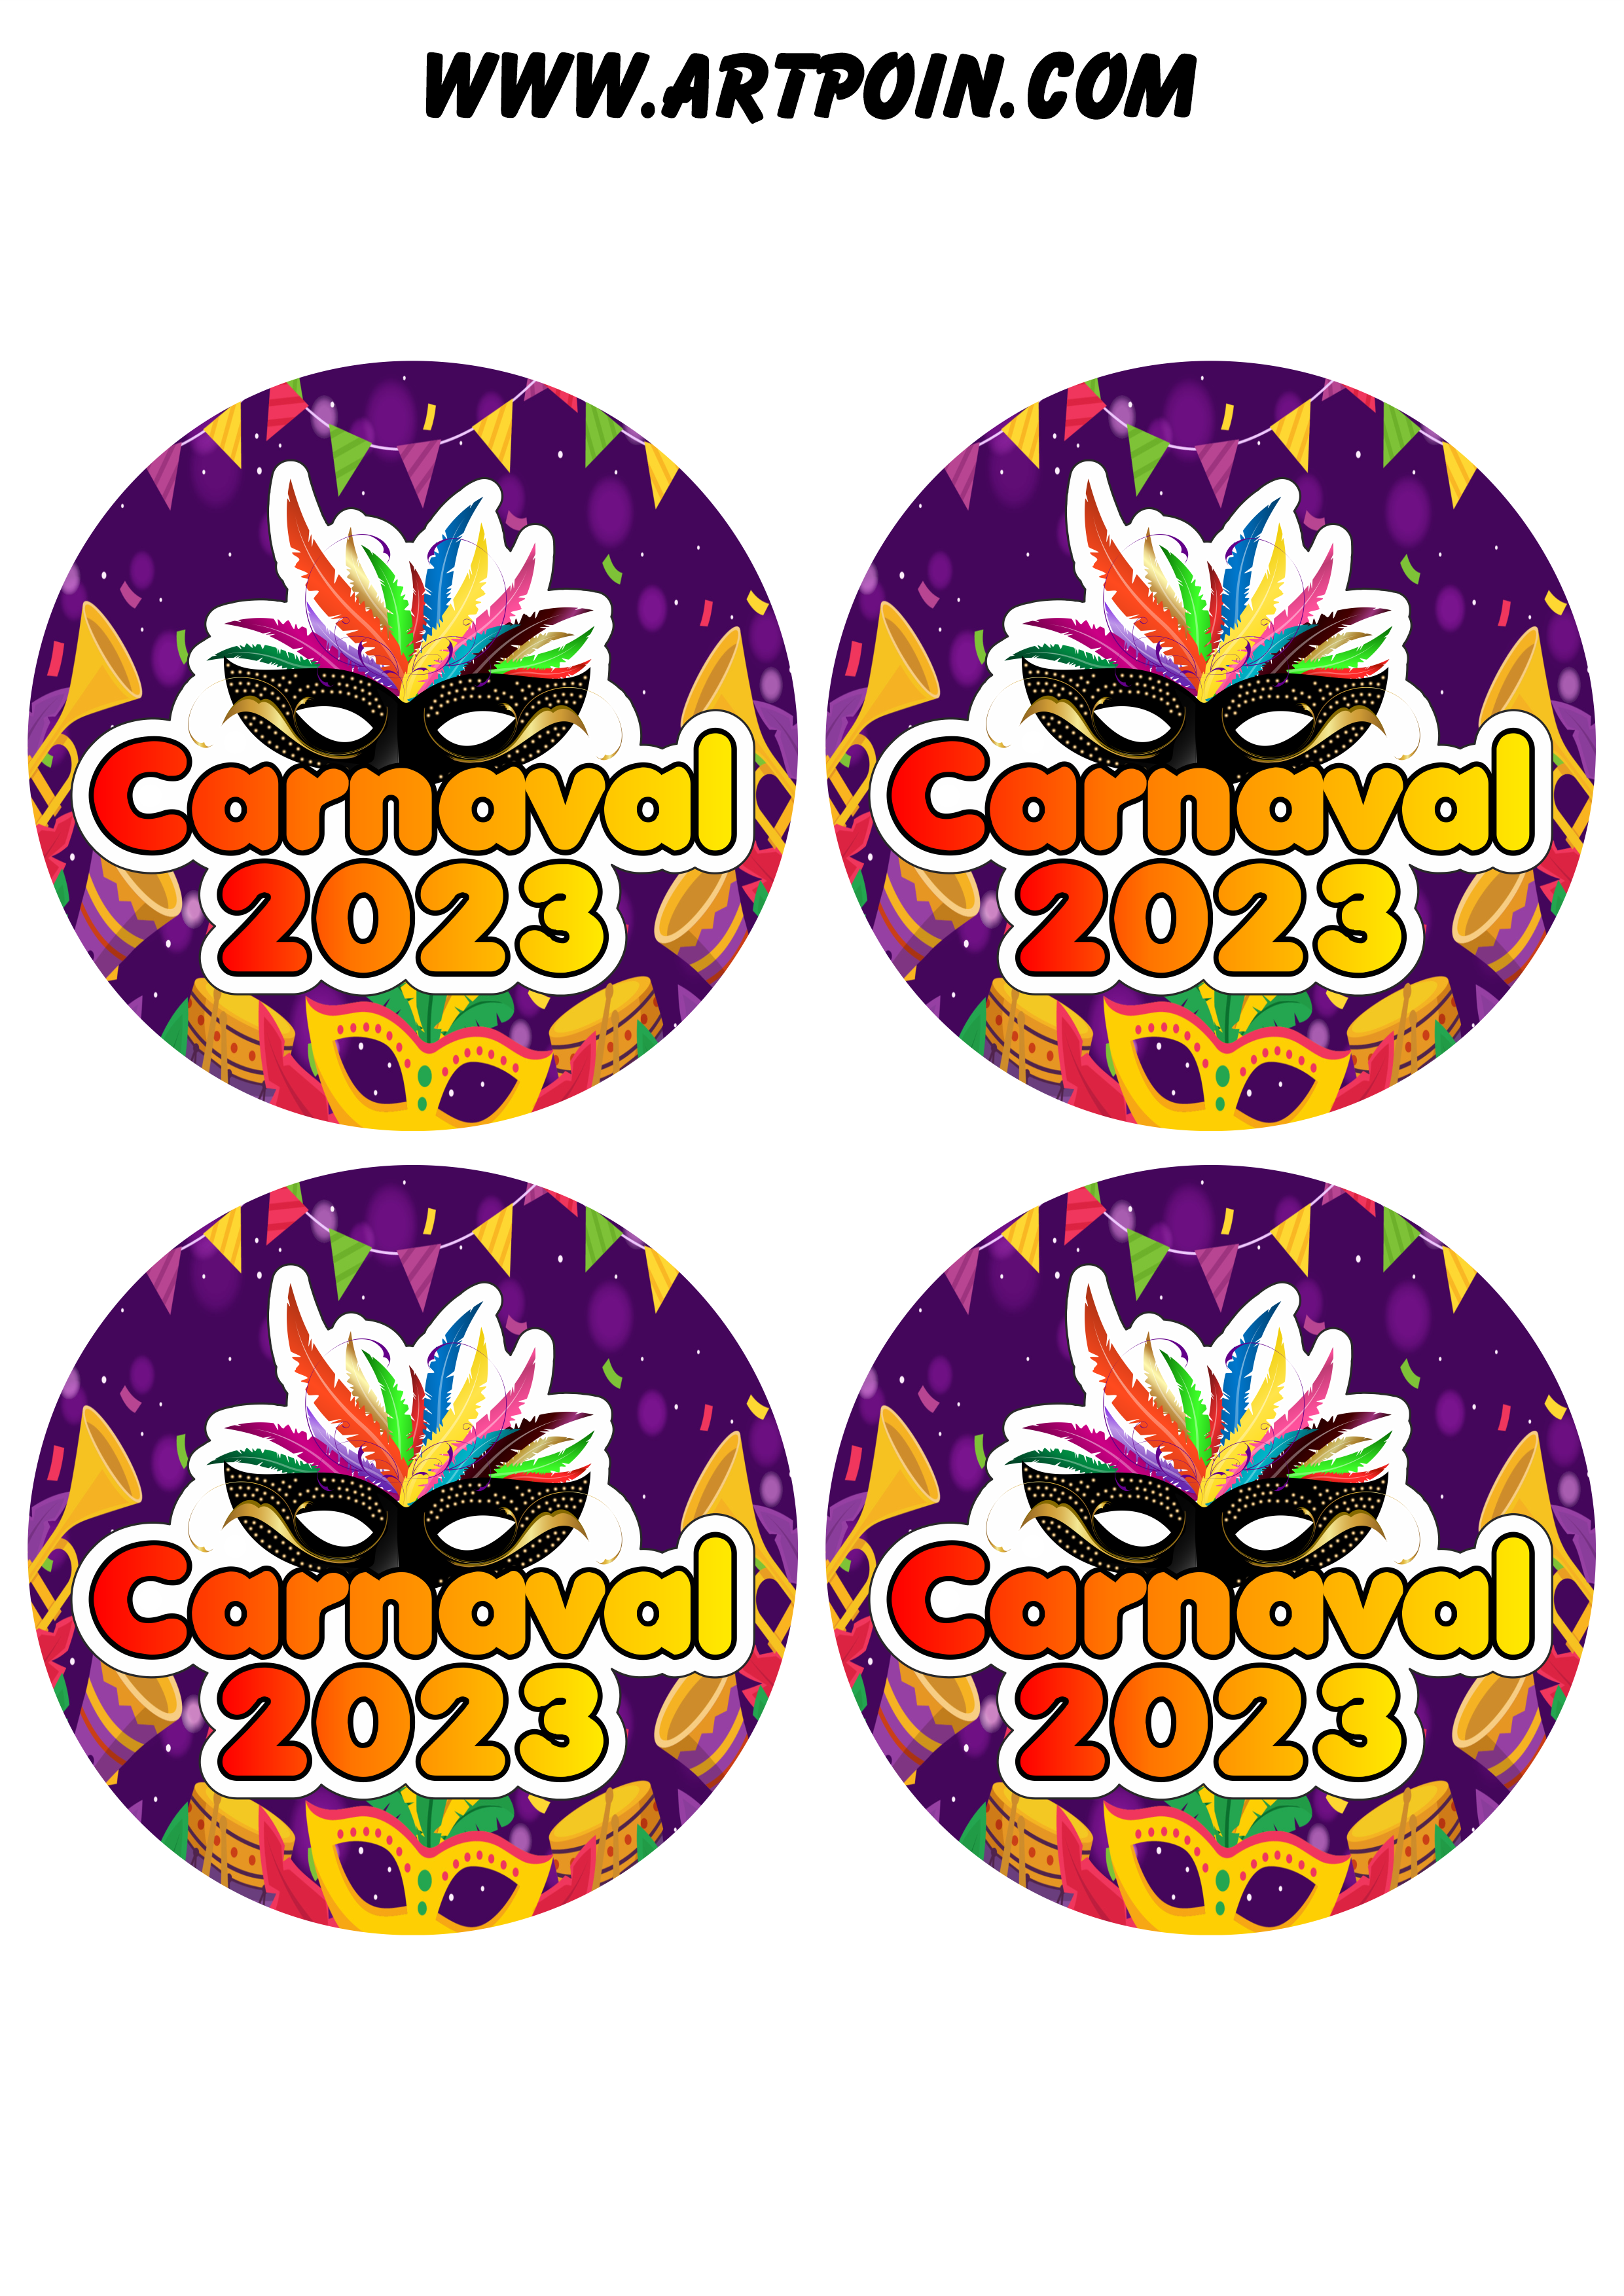 Carnaval 2023 adesivos stickers redondos pronto para imprimir e decorar 4 imagens png